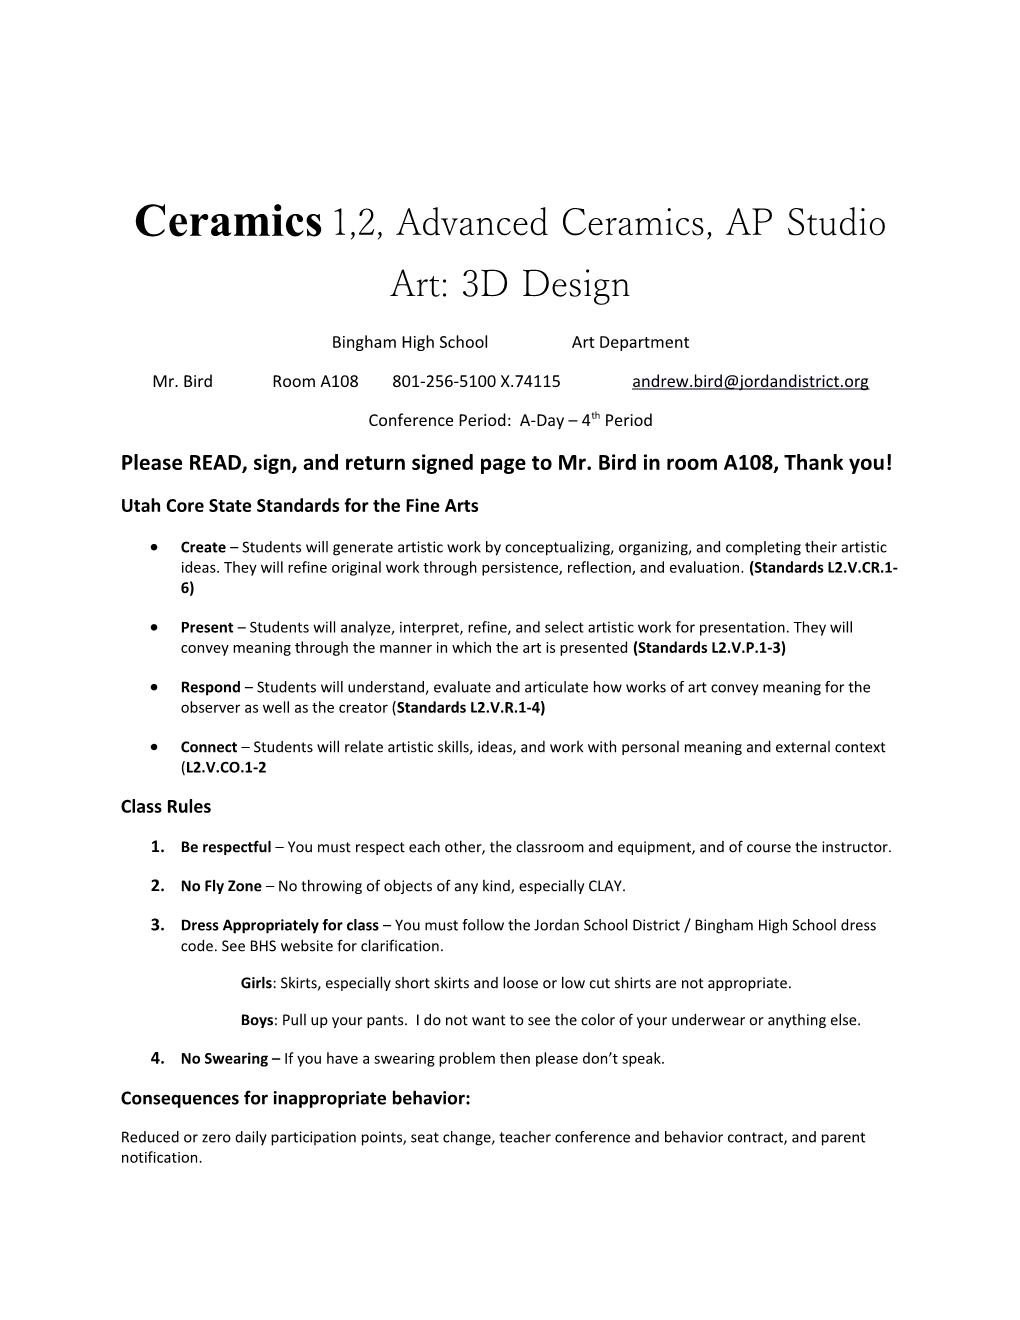 Ceramics1,2,Advanced Ceramics, AP Studio Art: 3D Design